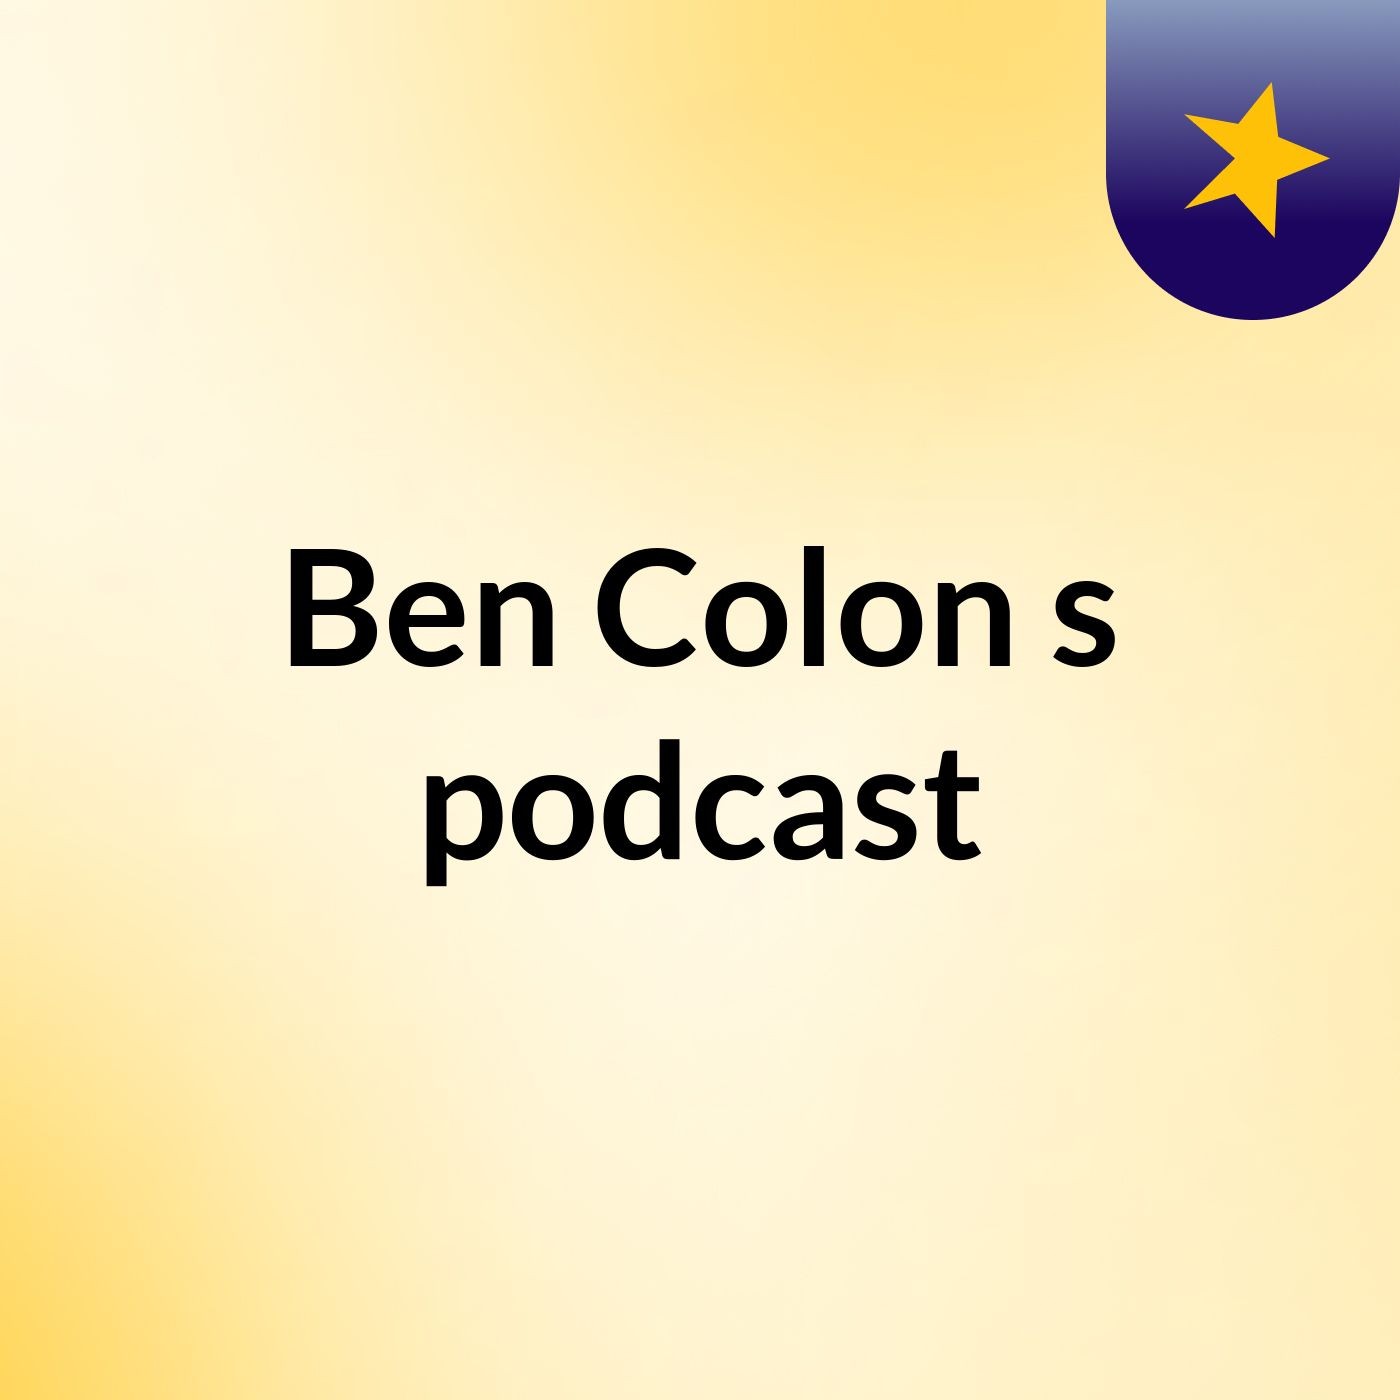 Ben Colon's podcast